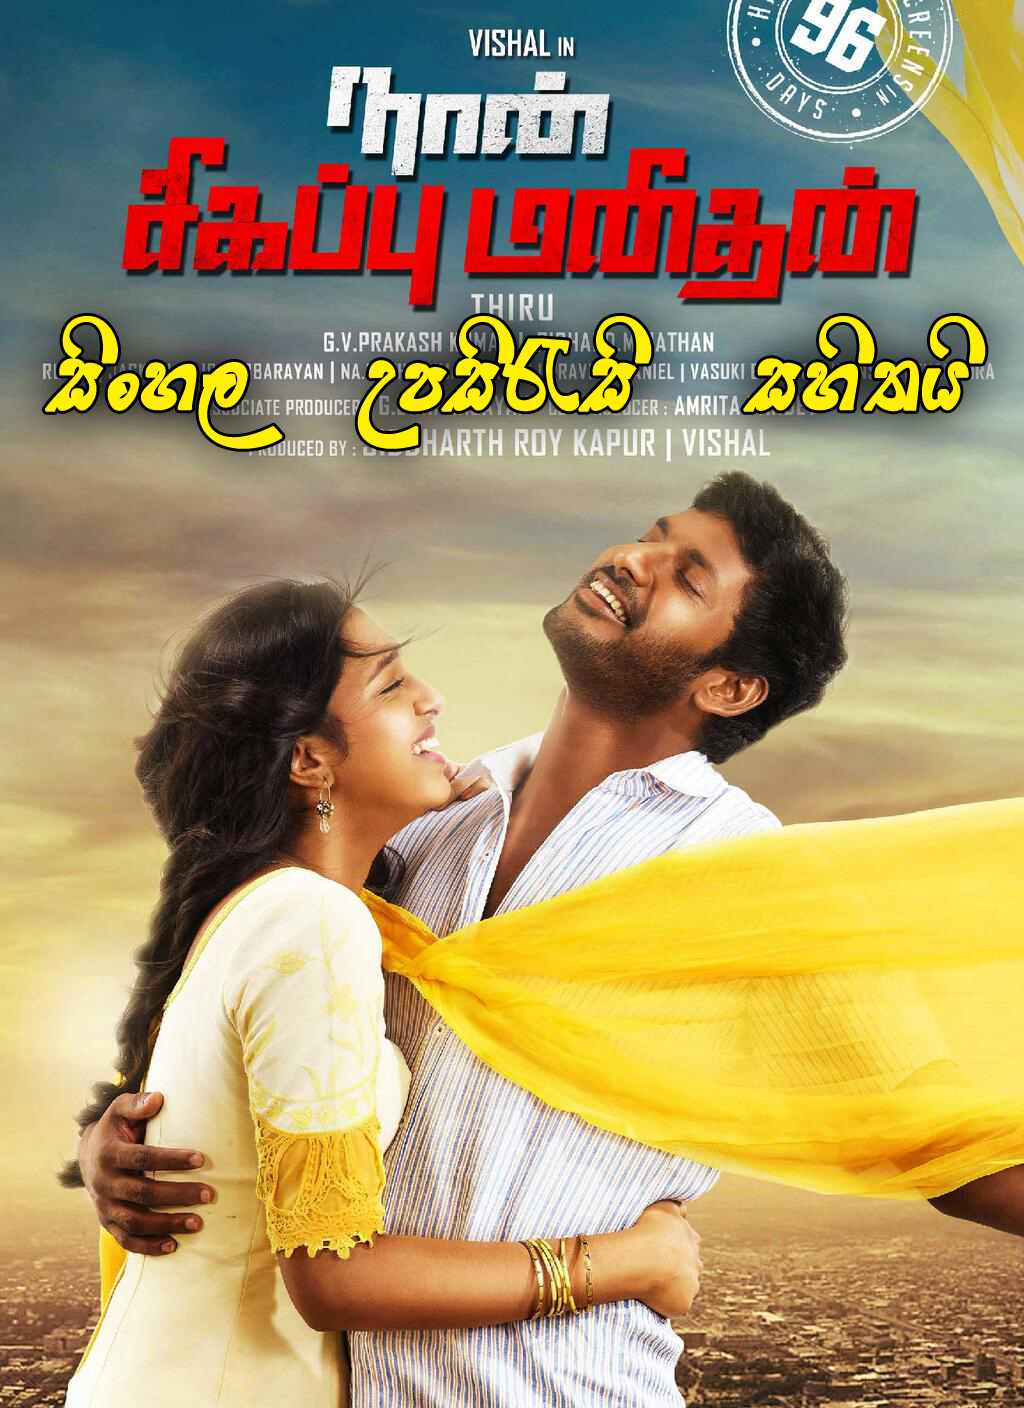 Tamil 3gp movie download